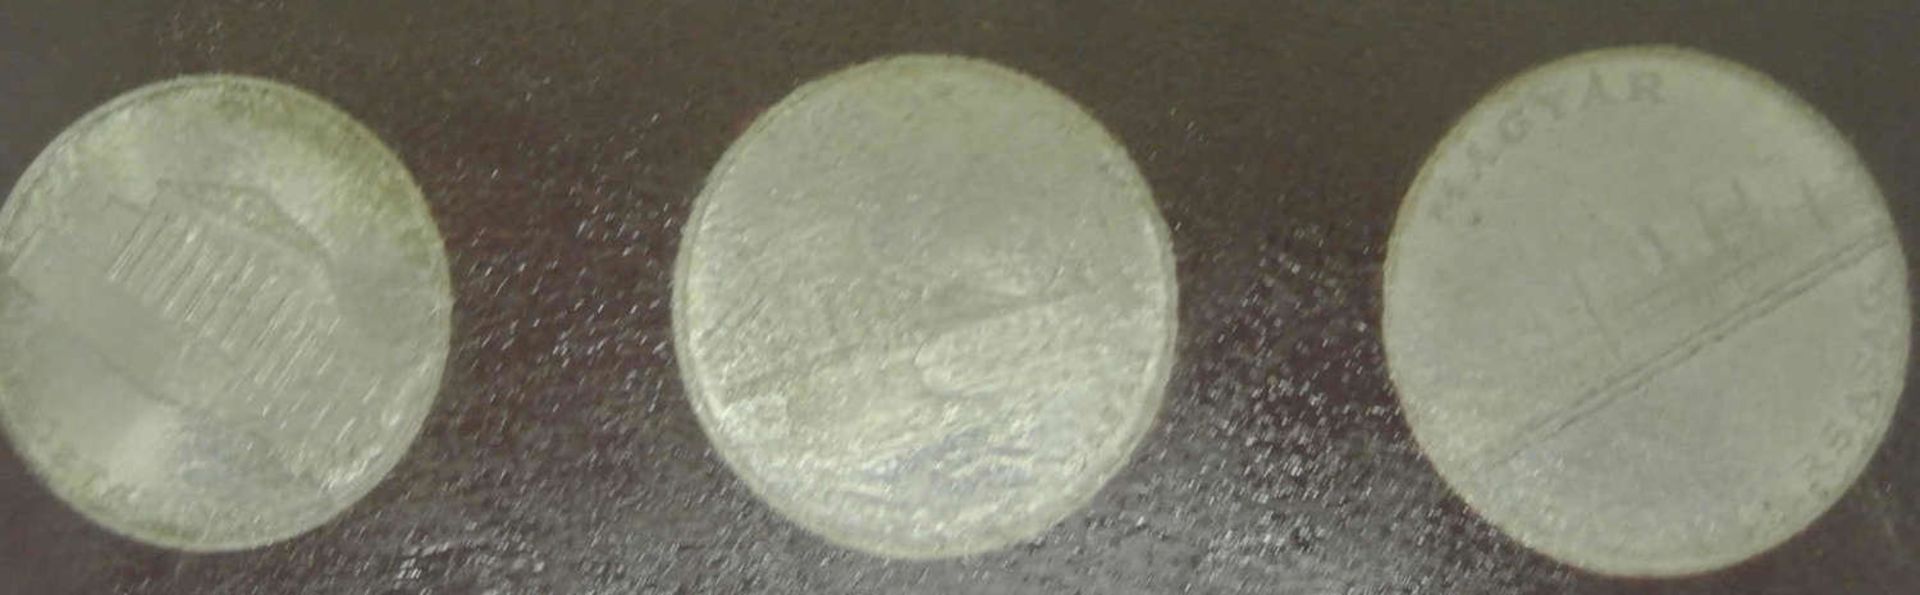 Ungarn, seltener Kursmünzsatz in Silber, 1956. 25/20 und 10 Forint. - Bild 2 aus 2